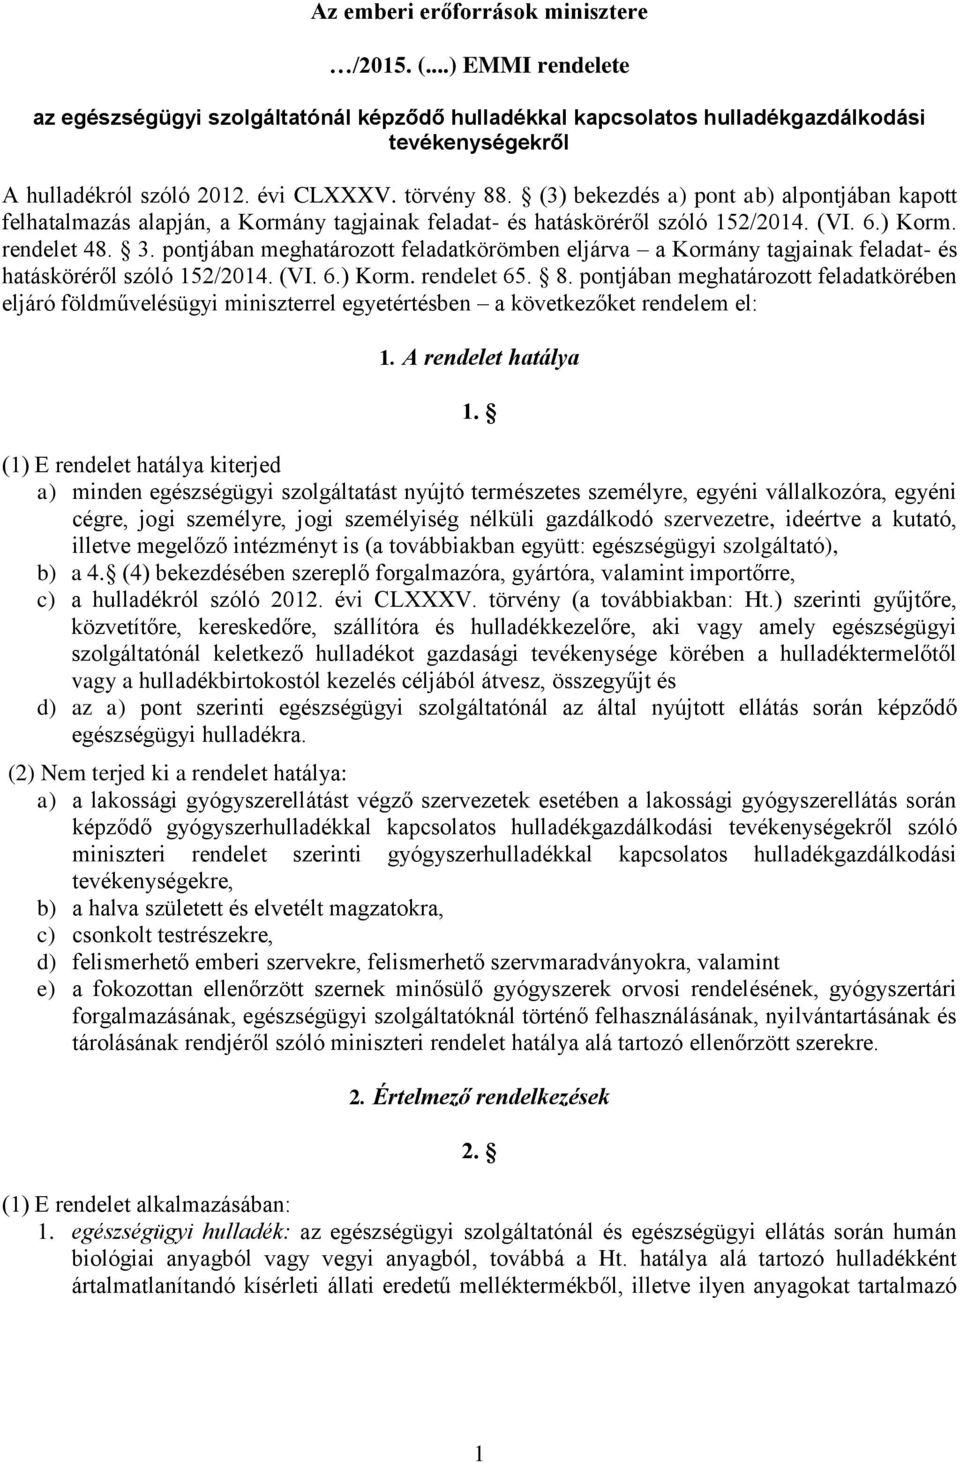 pontjában meghatározott feladatkörömben eljárva a Kormány tagjainak feladat- és hatásköréről szóló 152/2014. (VI. 6.) Korm. rendelet 65. 8.